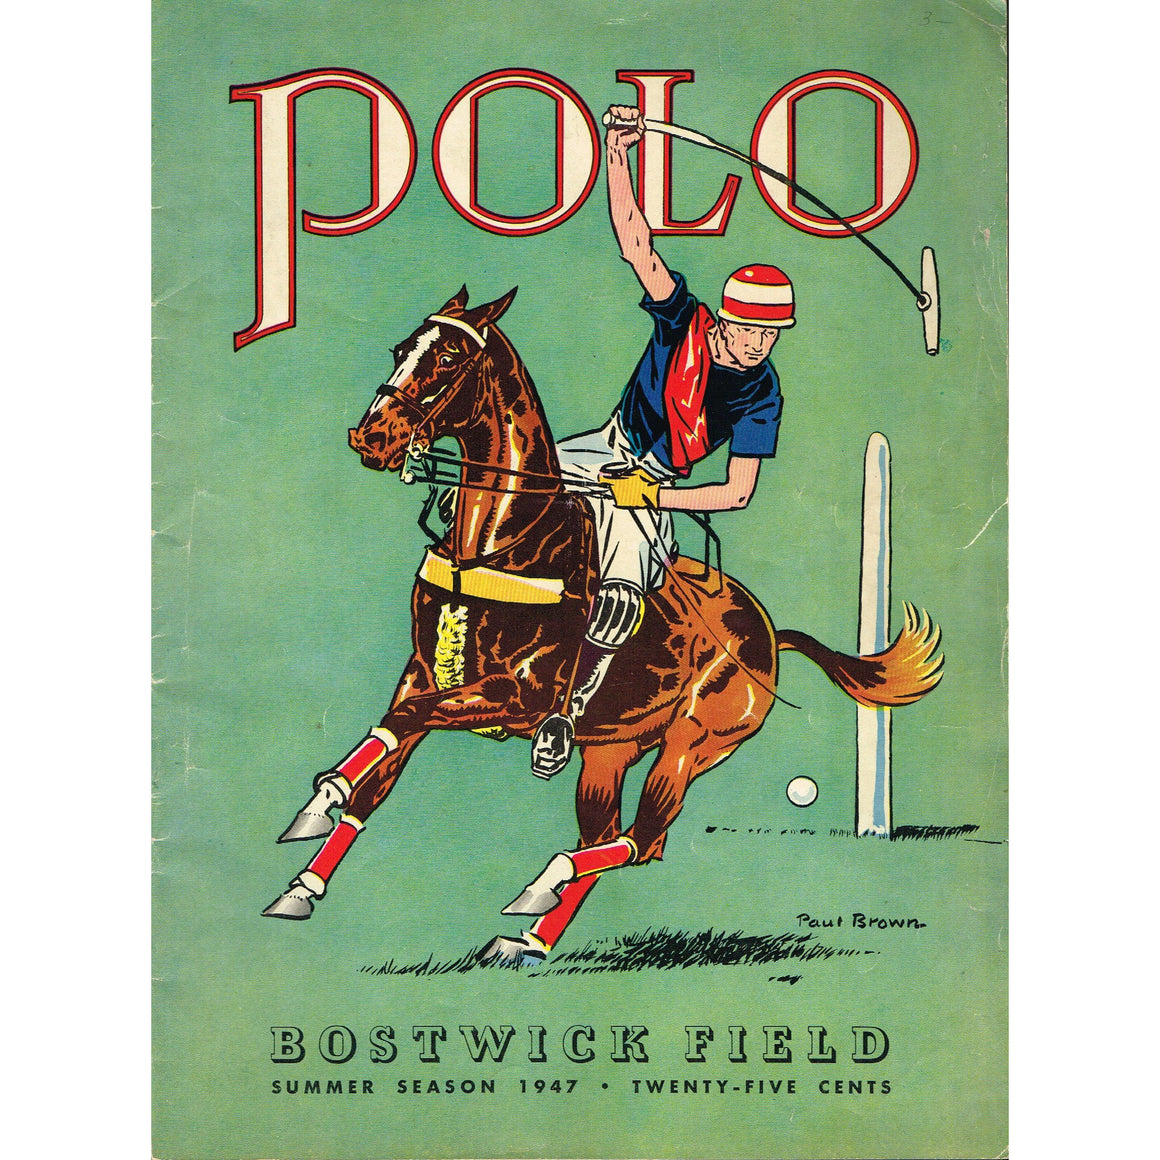 Polo Bostwick Field Summer 1947